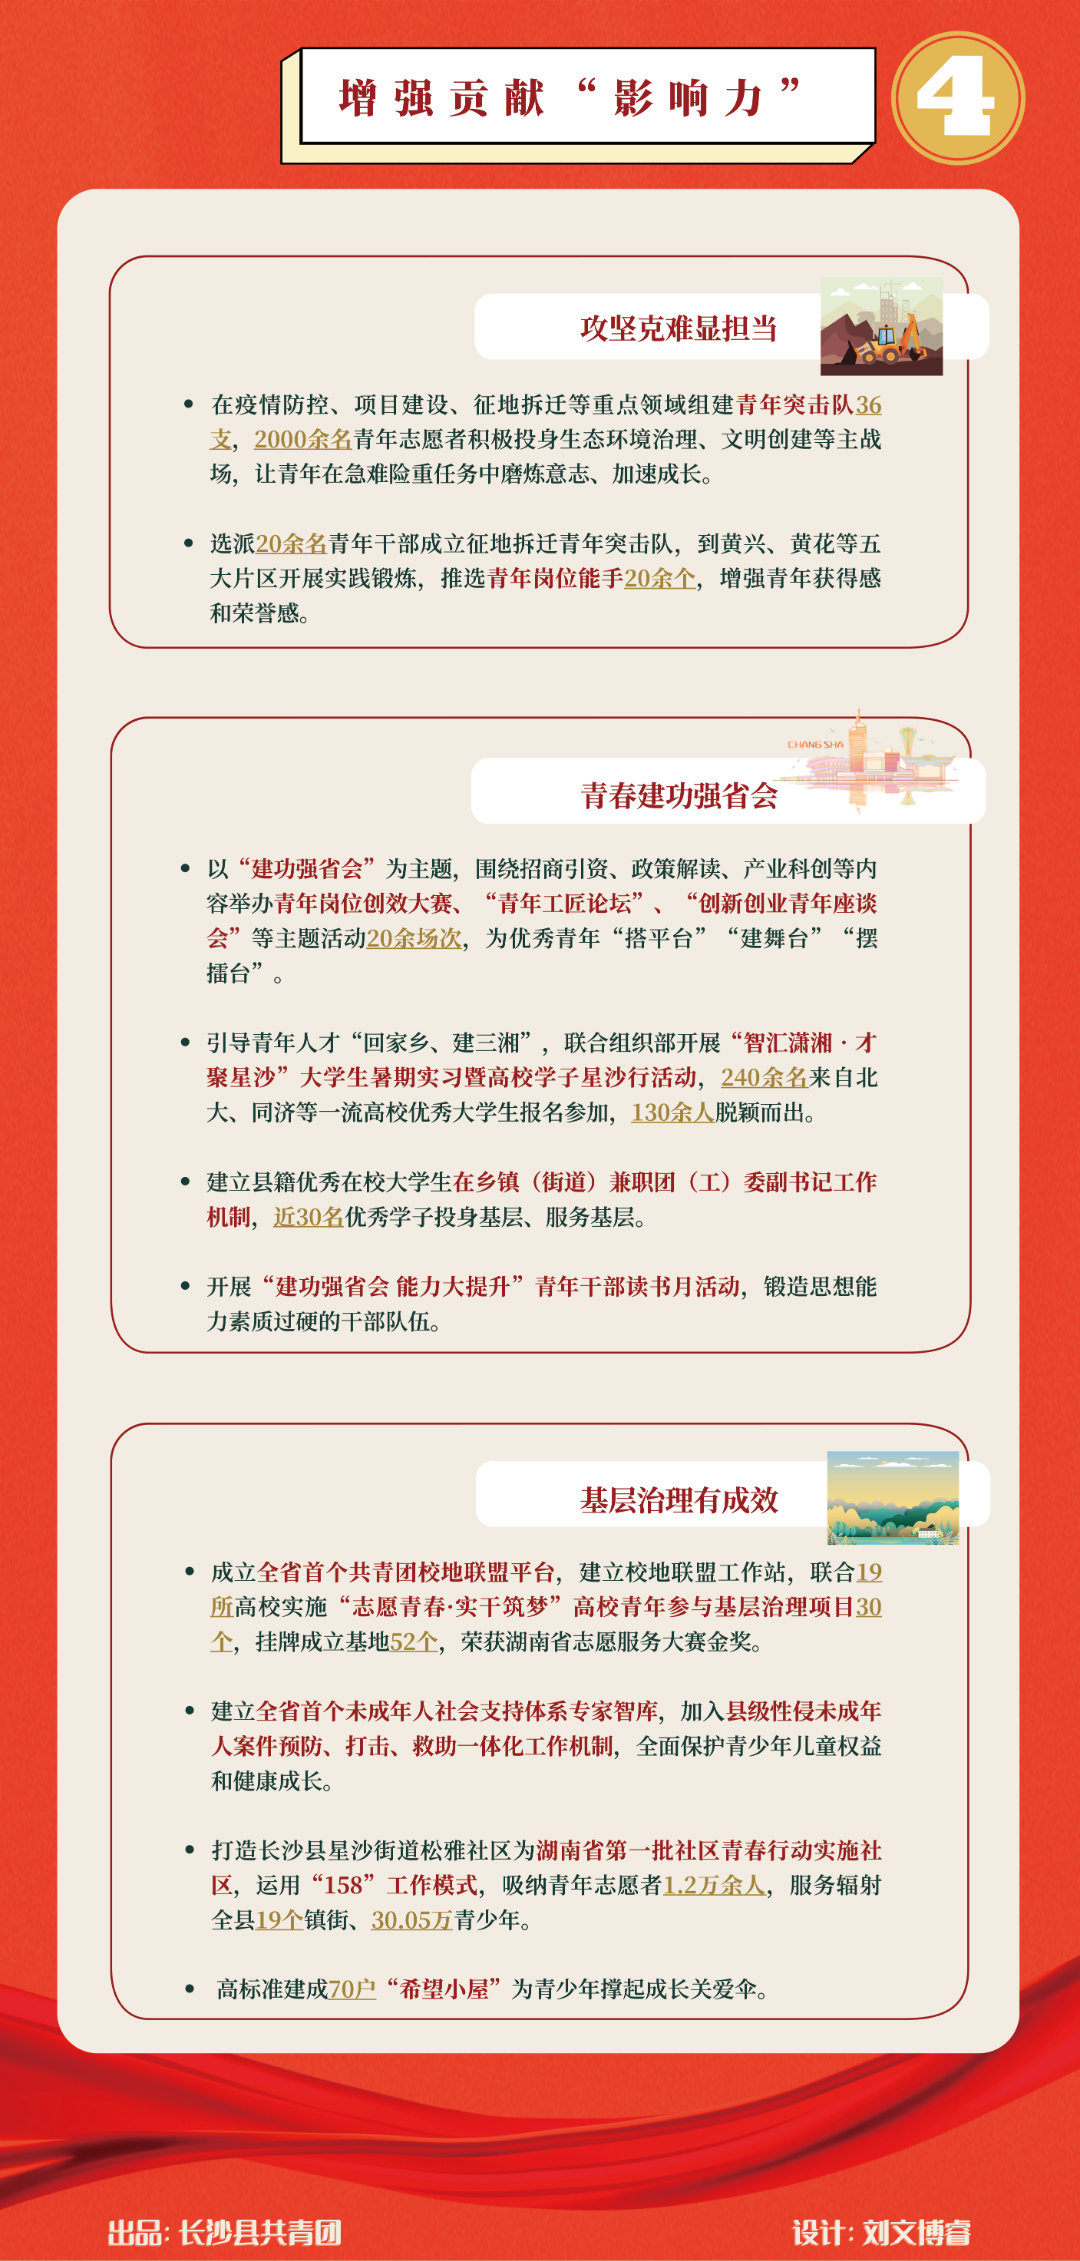 一图读懂“长沙县县域共青团基层组织改革成效”